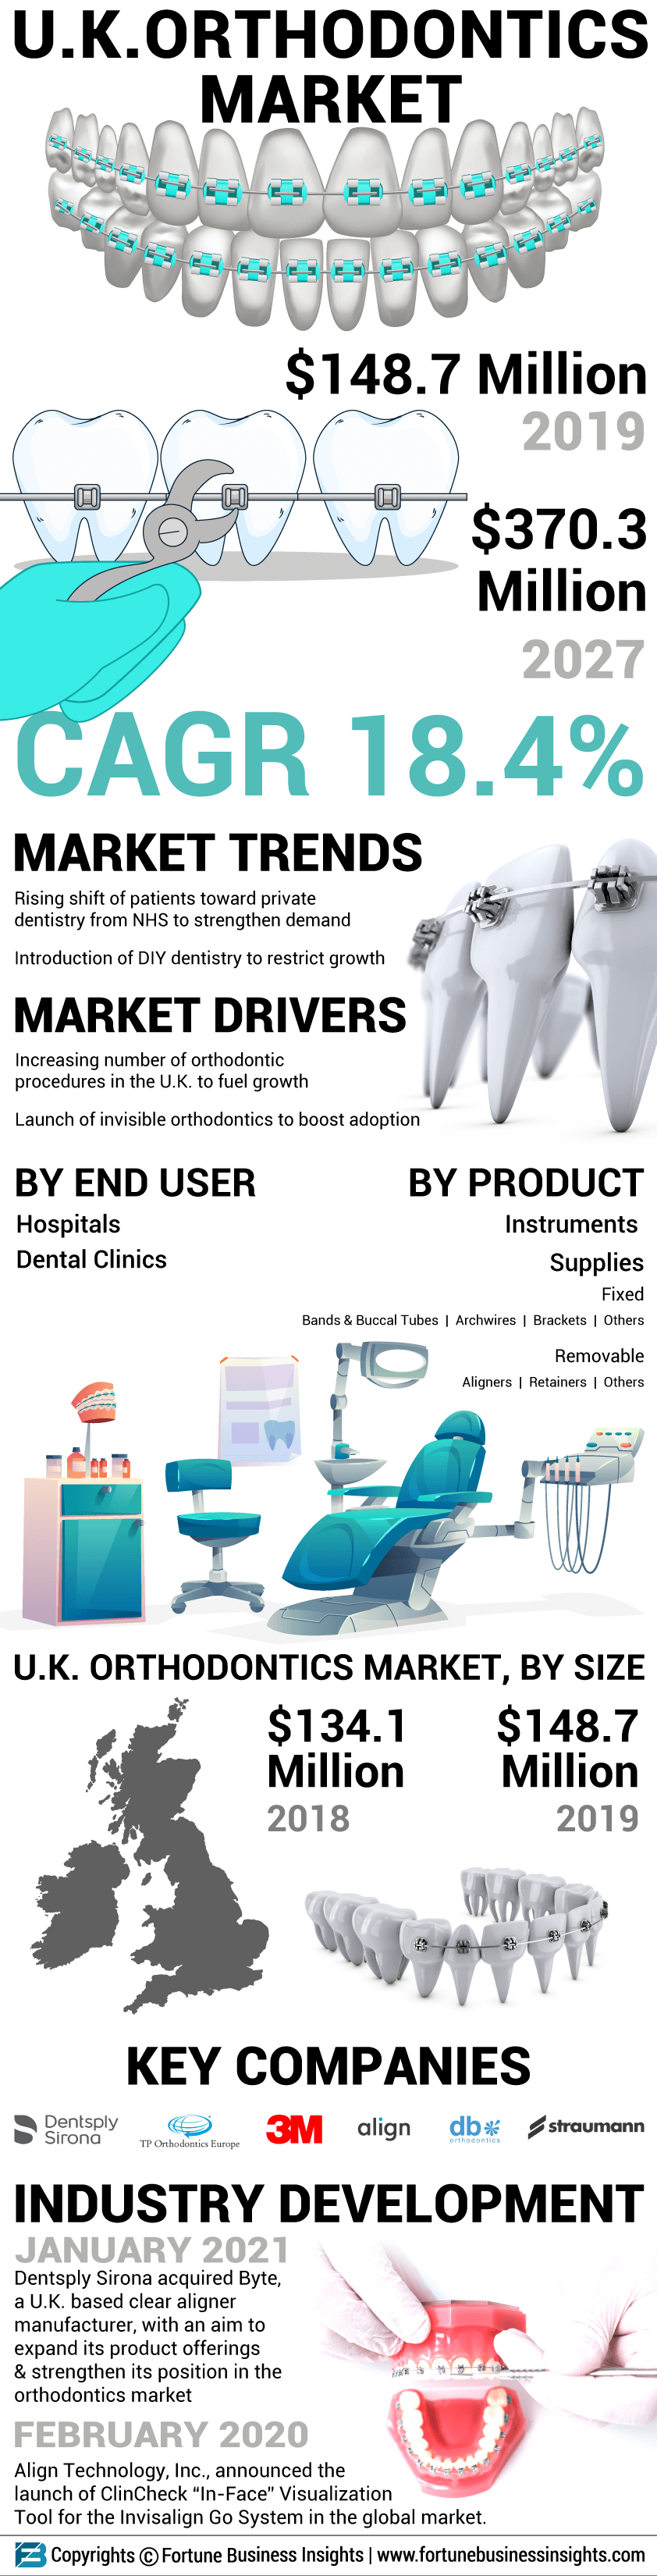 U.K. Orthodontics Market